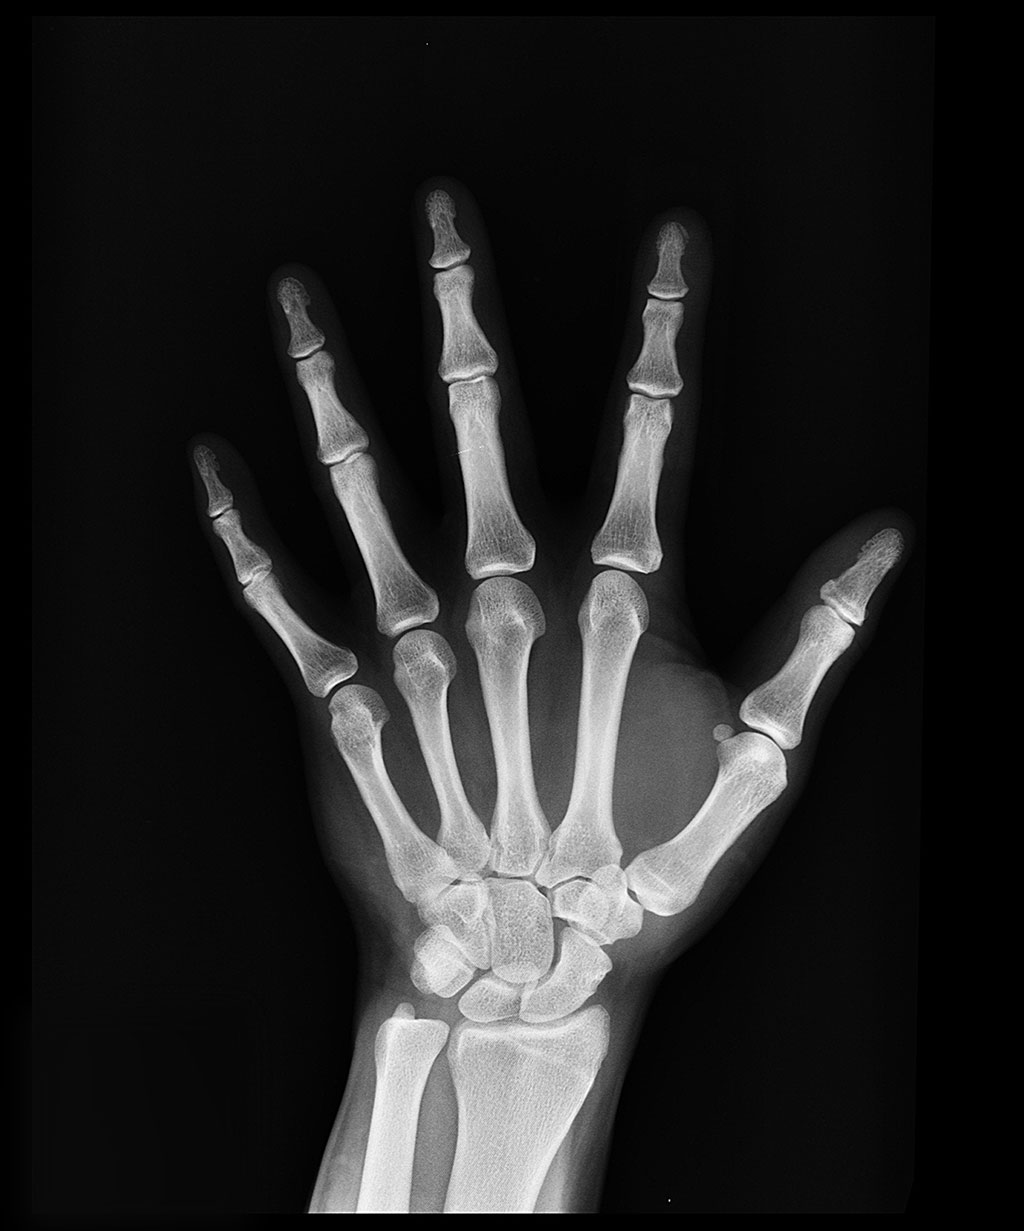 Imagen: RBfracture puede identificar automáticamente las fracturas en rayos X en segundos (Fotografía cortesía de Pexels)